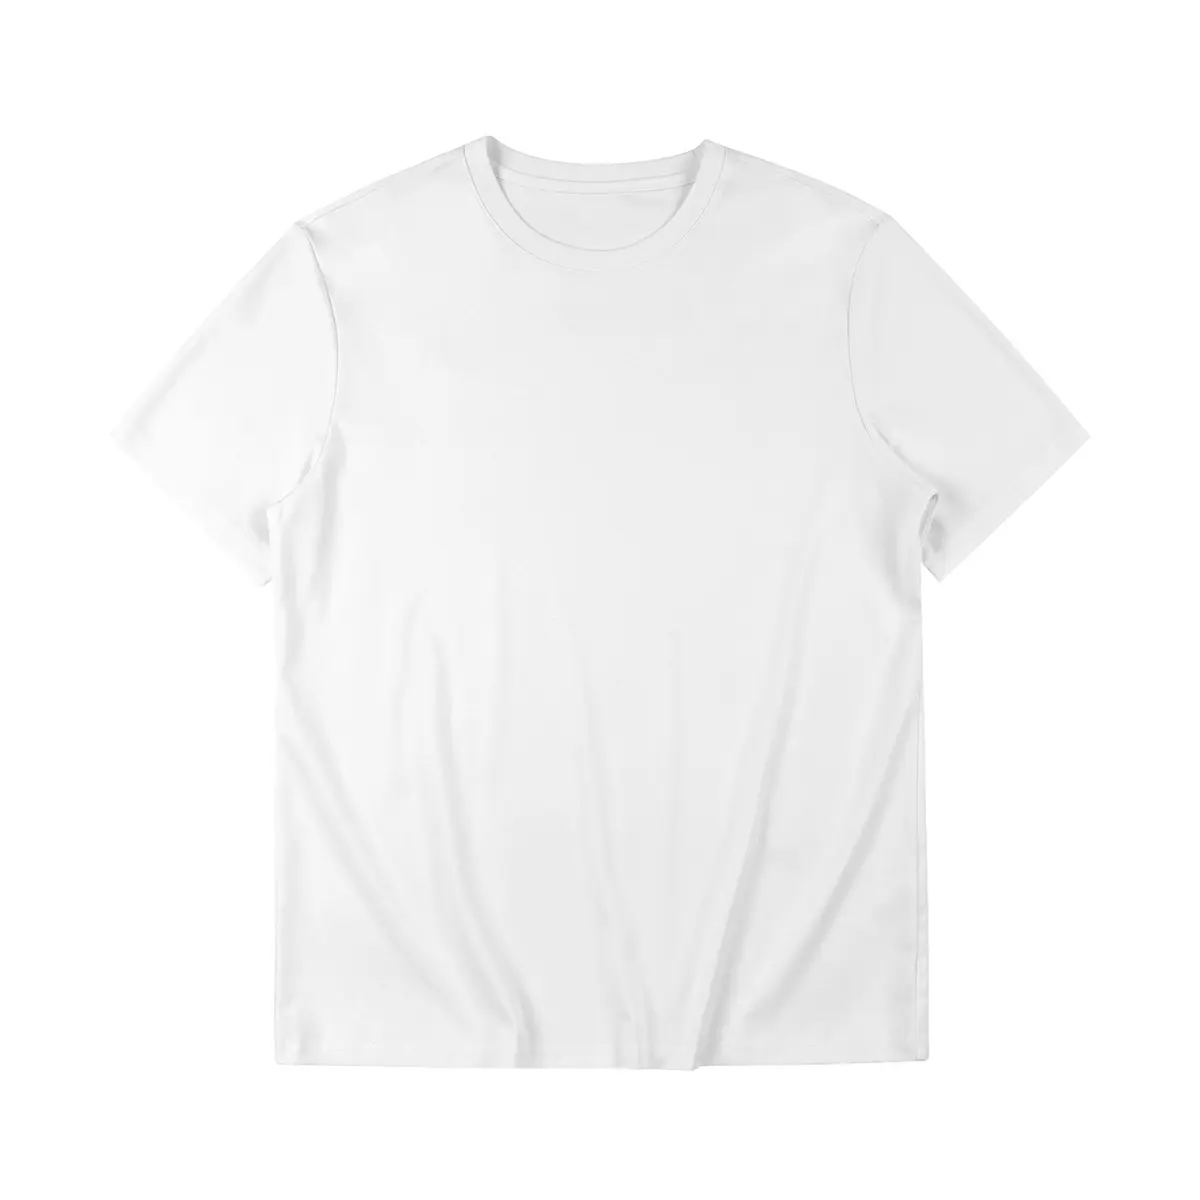 Custom logo plus size black white design 3D Digital Print for men 100% cotton Short Sleeve T-shirt